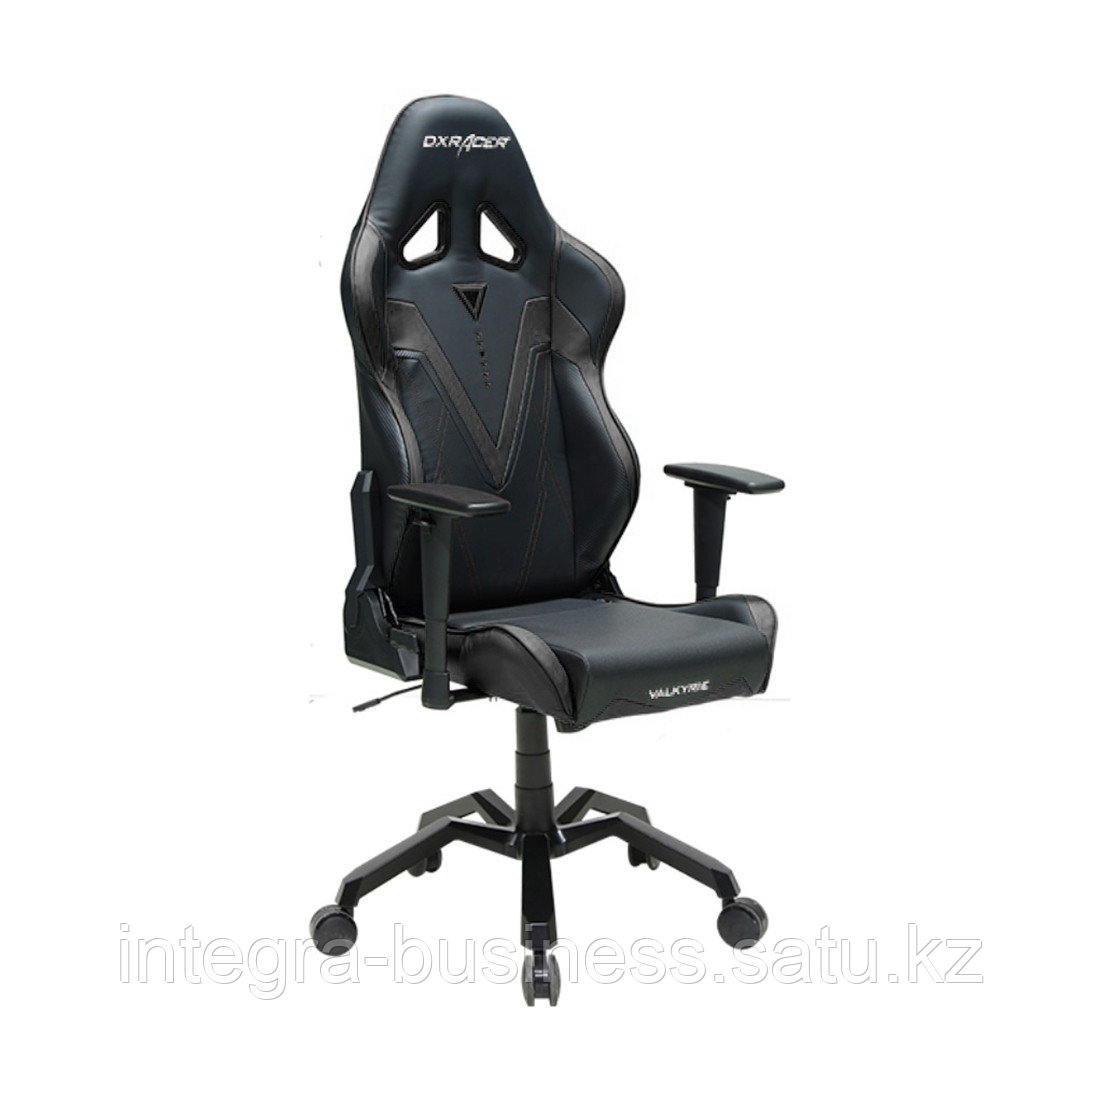 Игровое компьютерное кресло DX Racer OH/VB03/N, фото 1